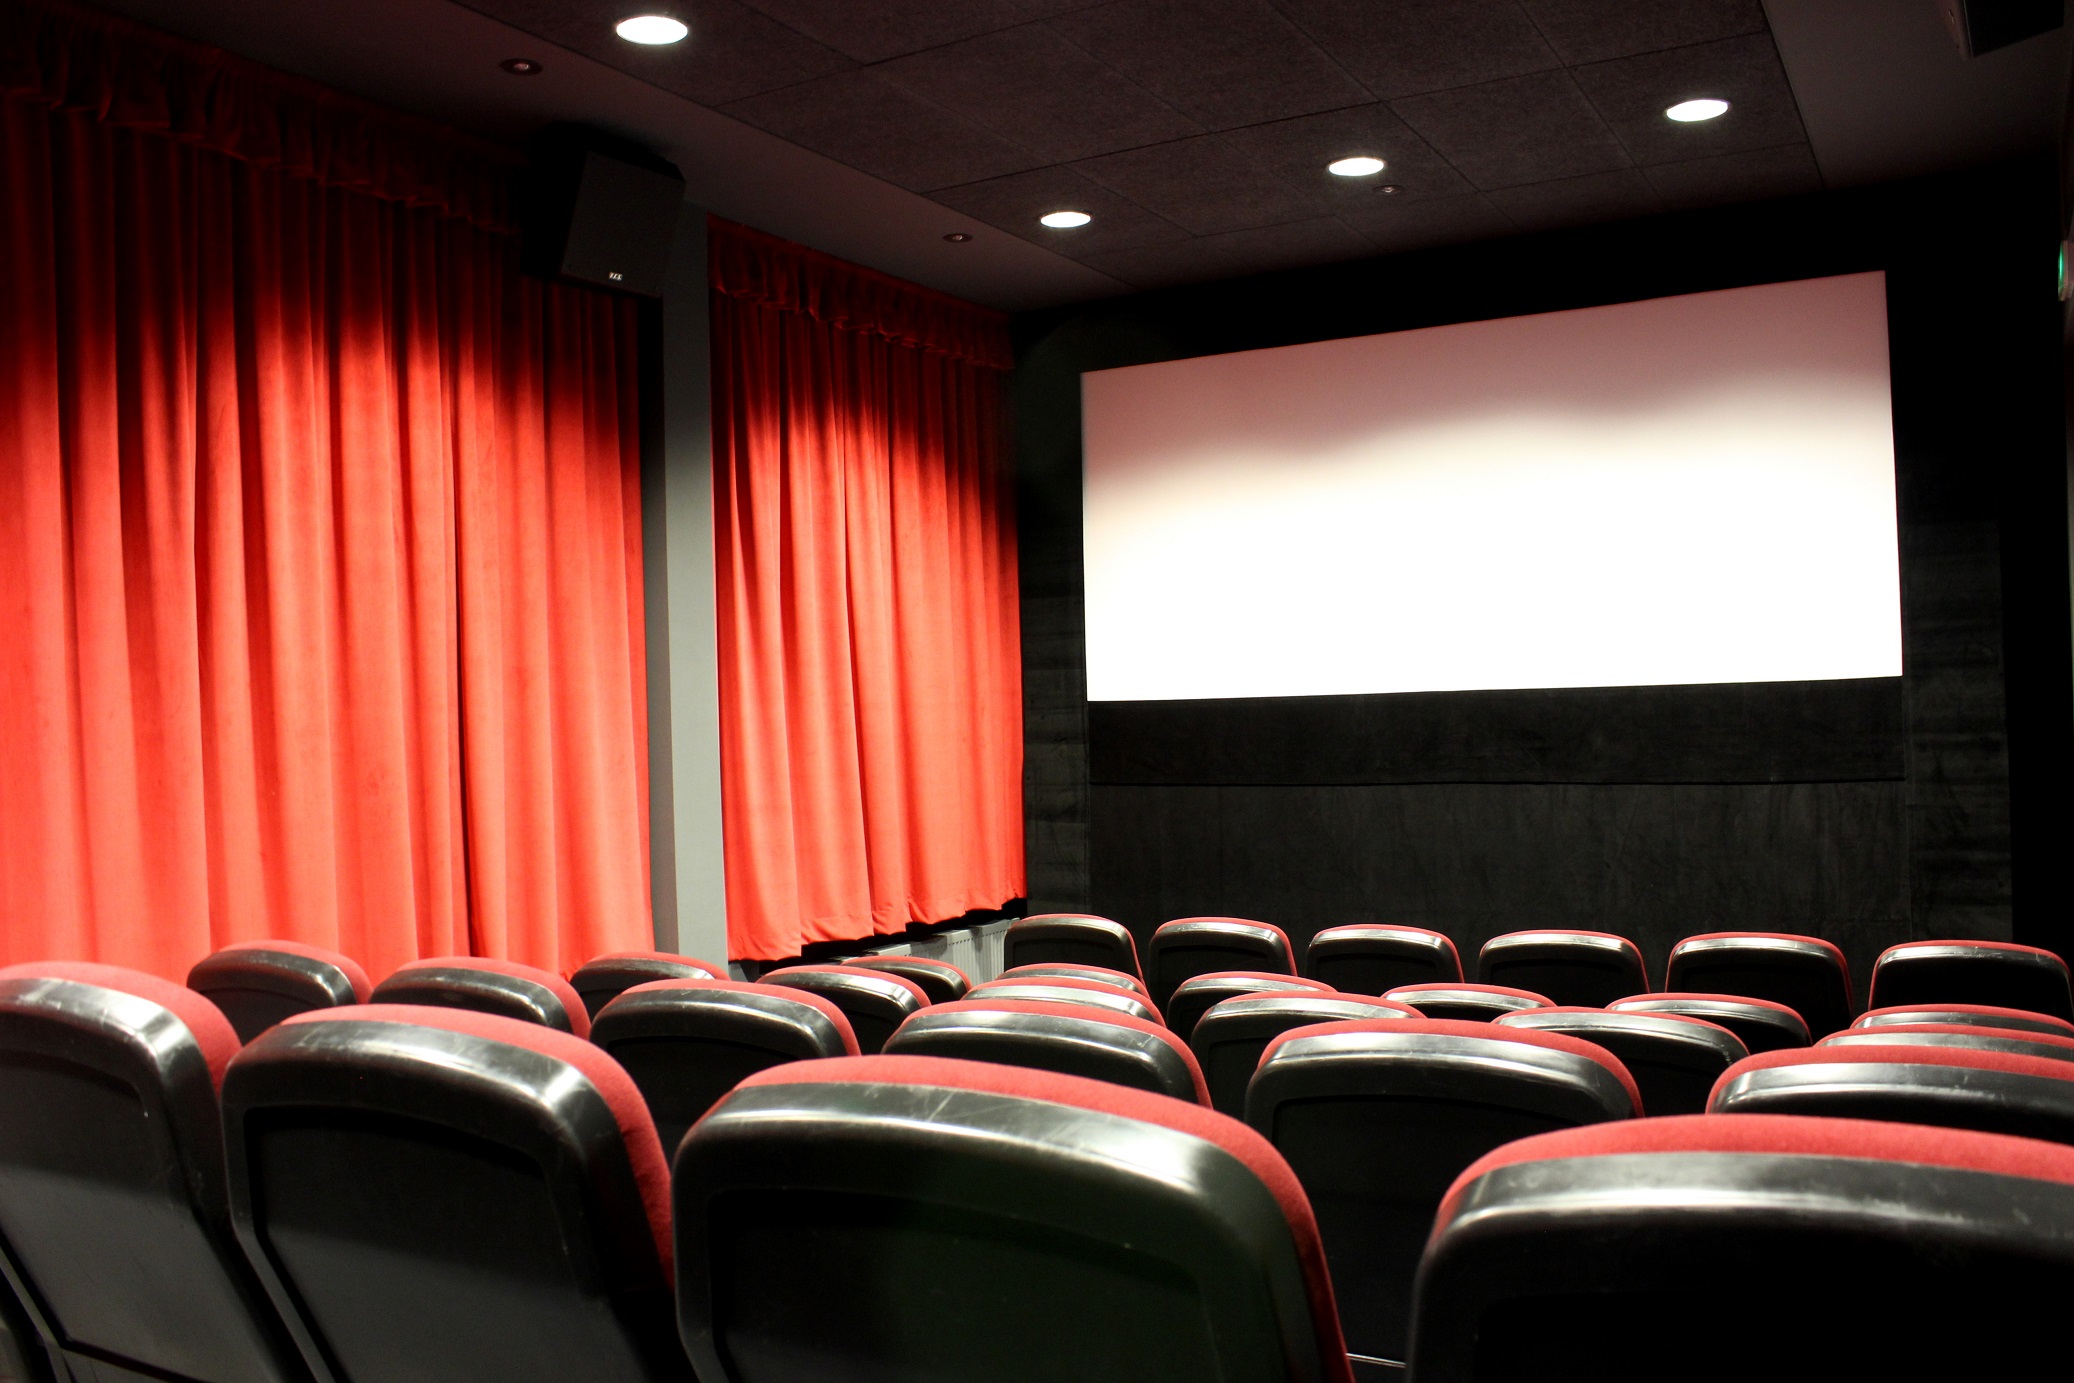 Salle de cinéma - rouge 44 emplacements